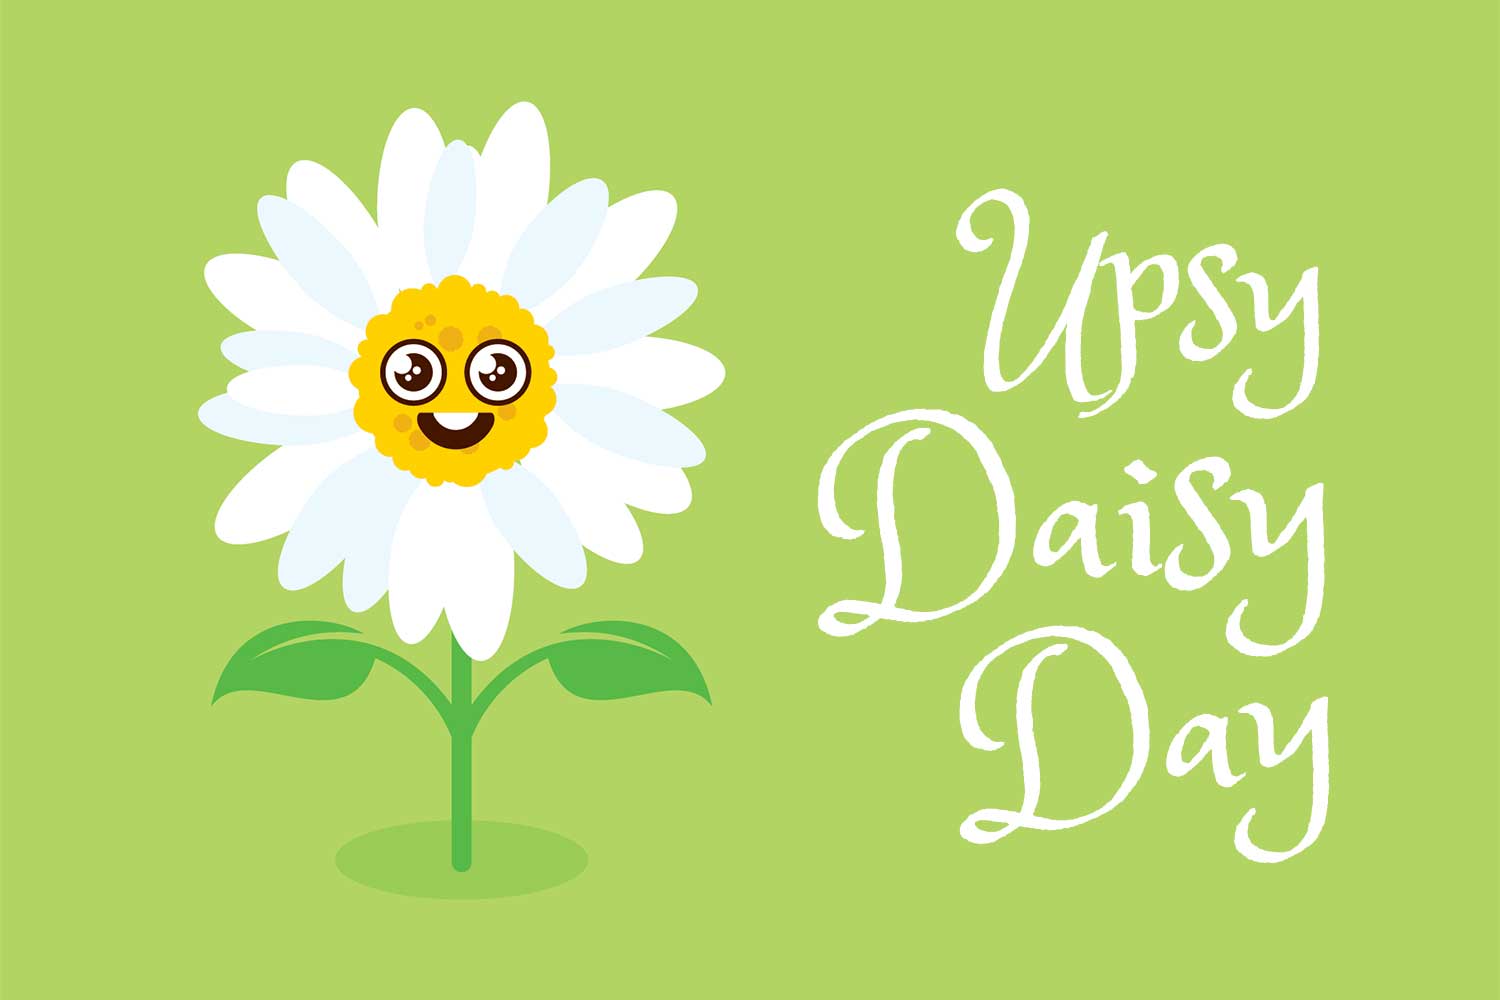 Upsy Daisy Day